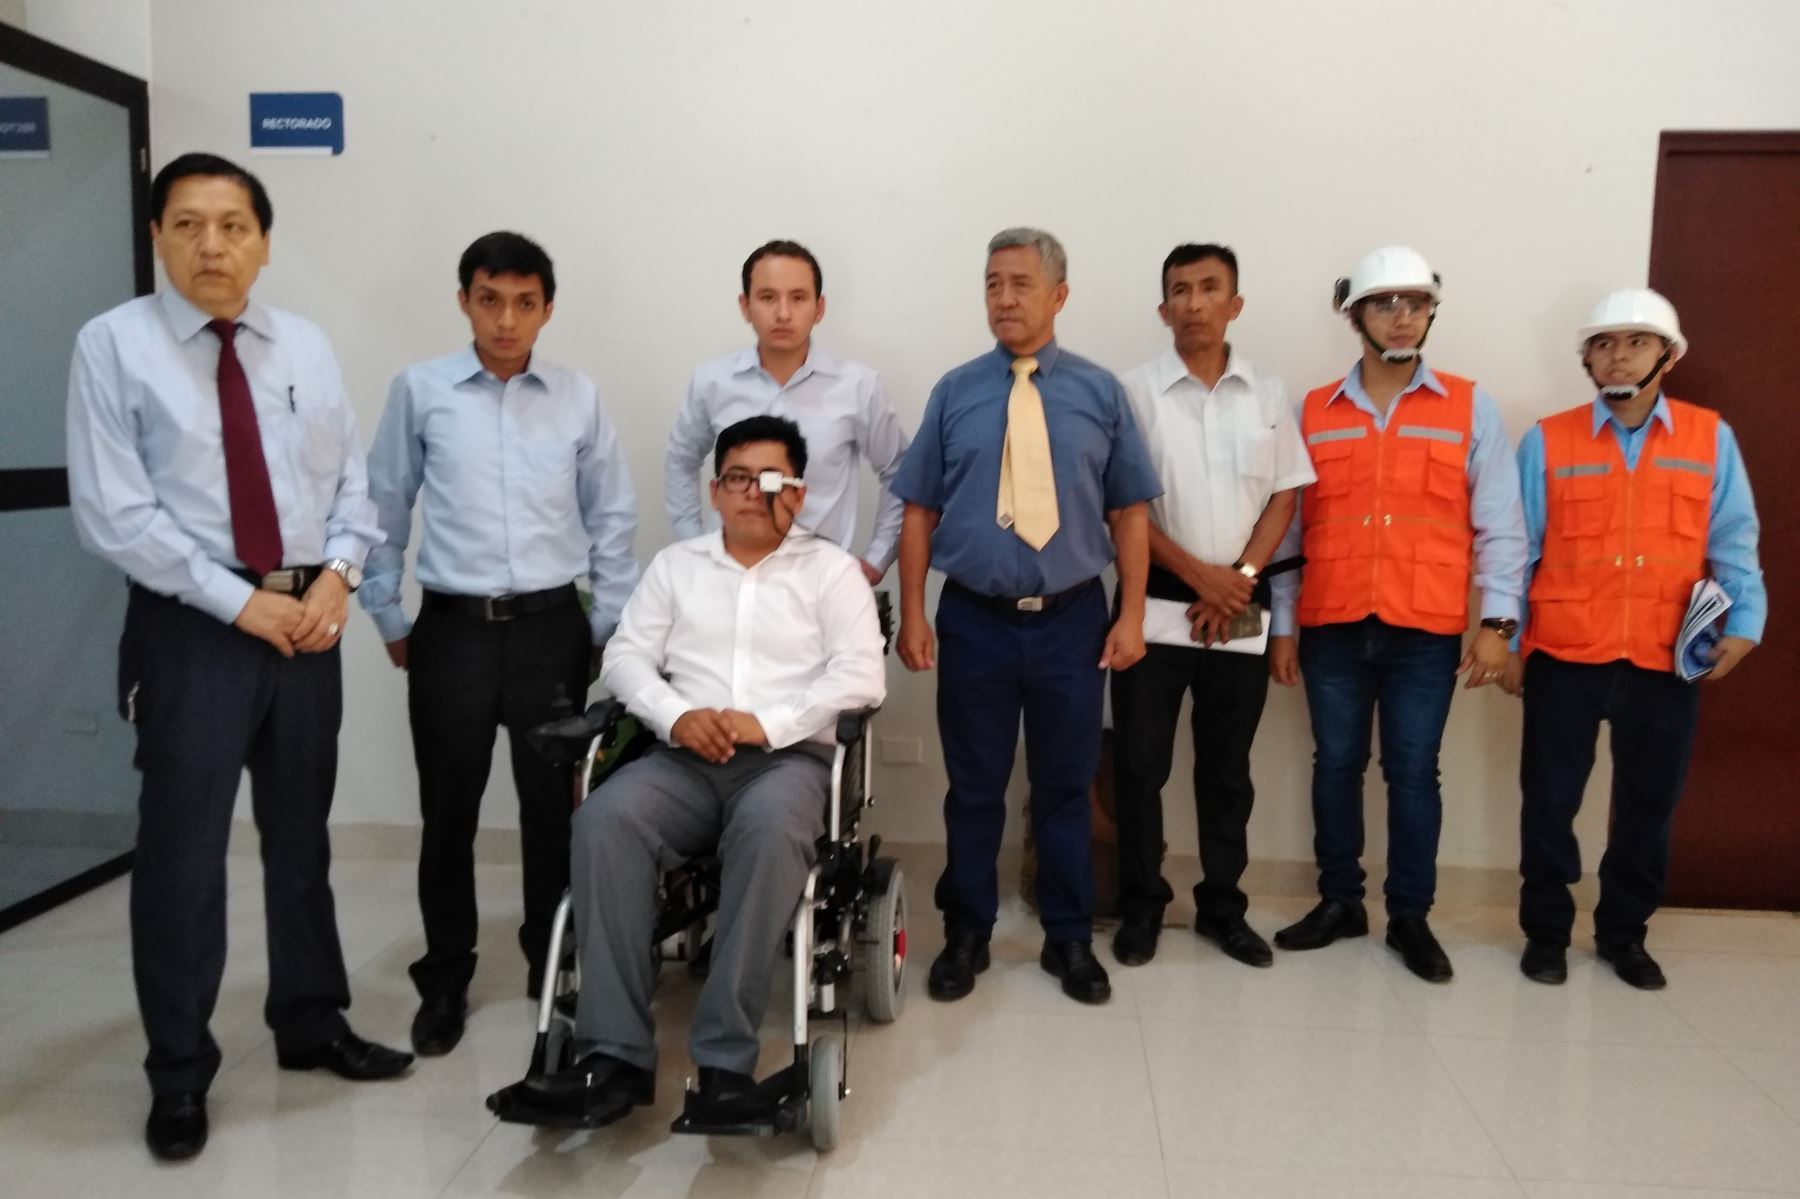 Egresados de la Facultad de Ingeniería Electrónica de la UNPRG de Lambayeque crearon una silla de ruedas para personas tetrapléjicas.